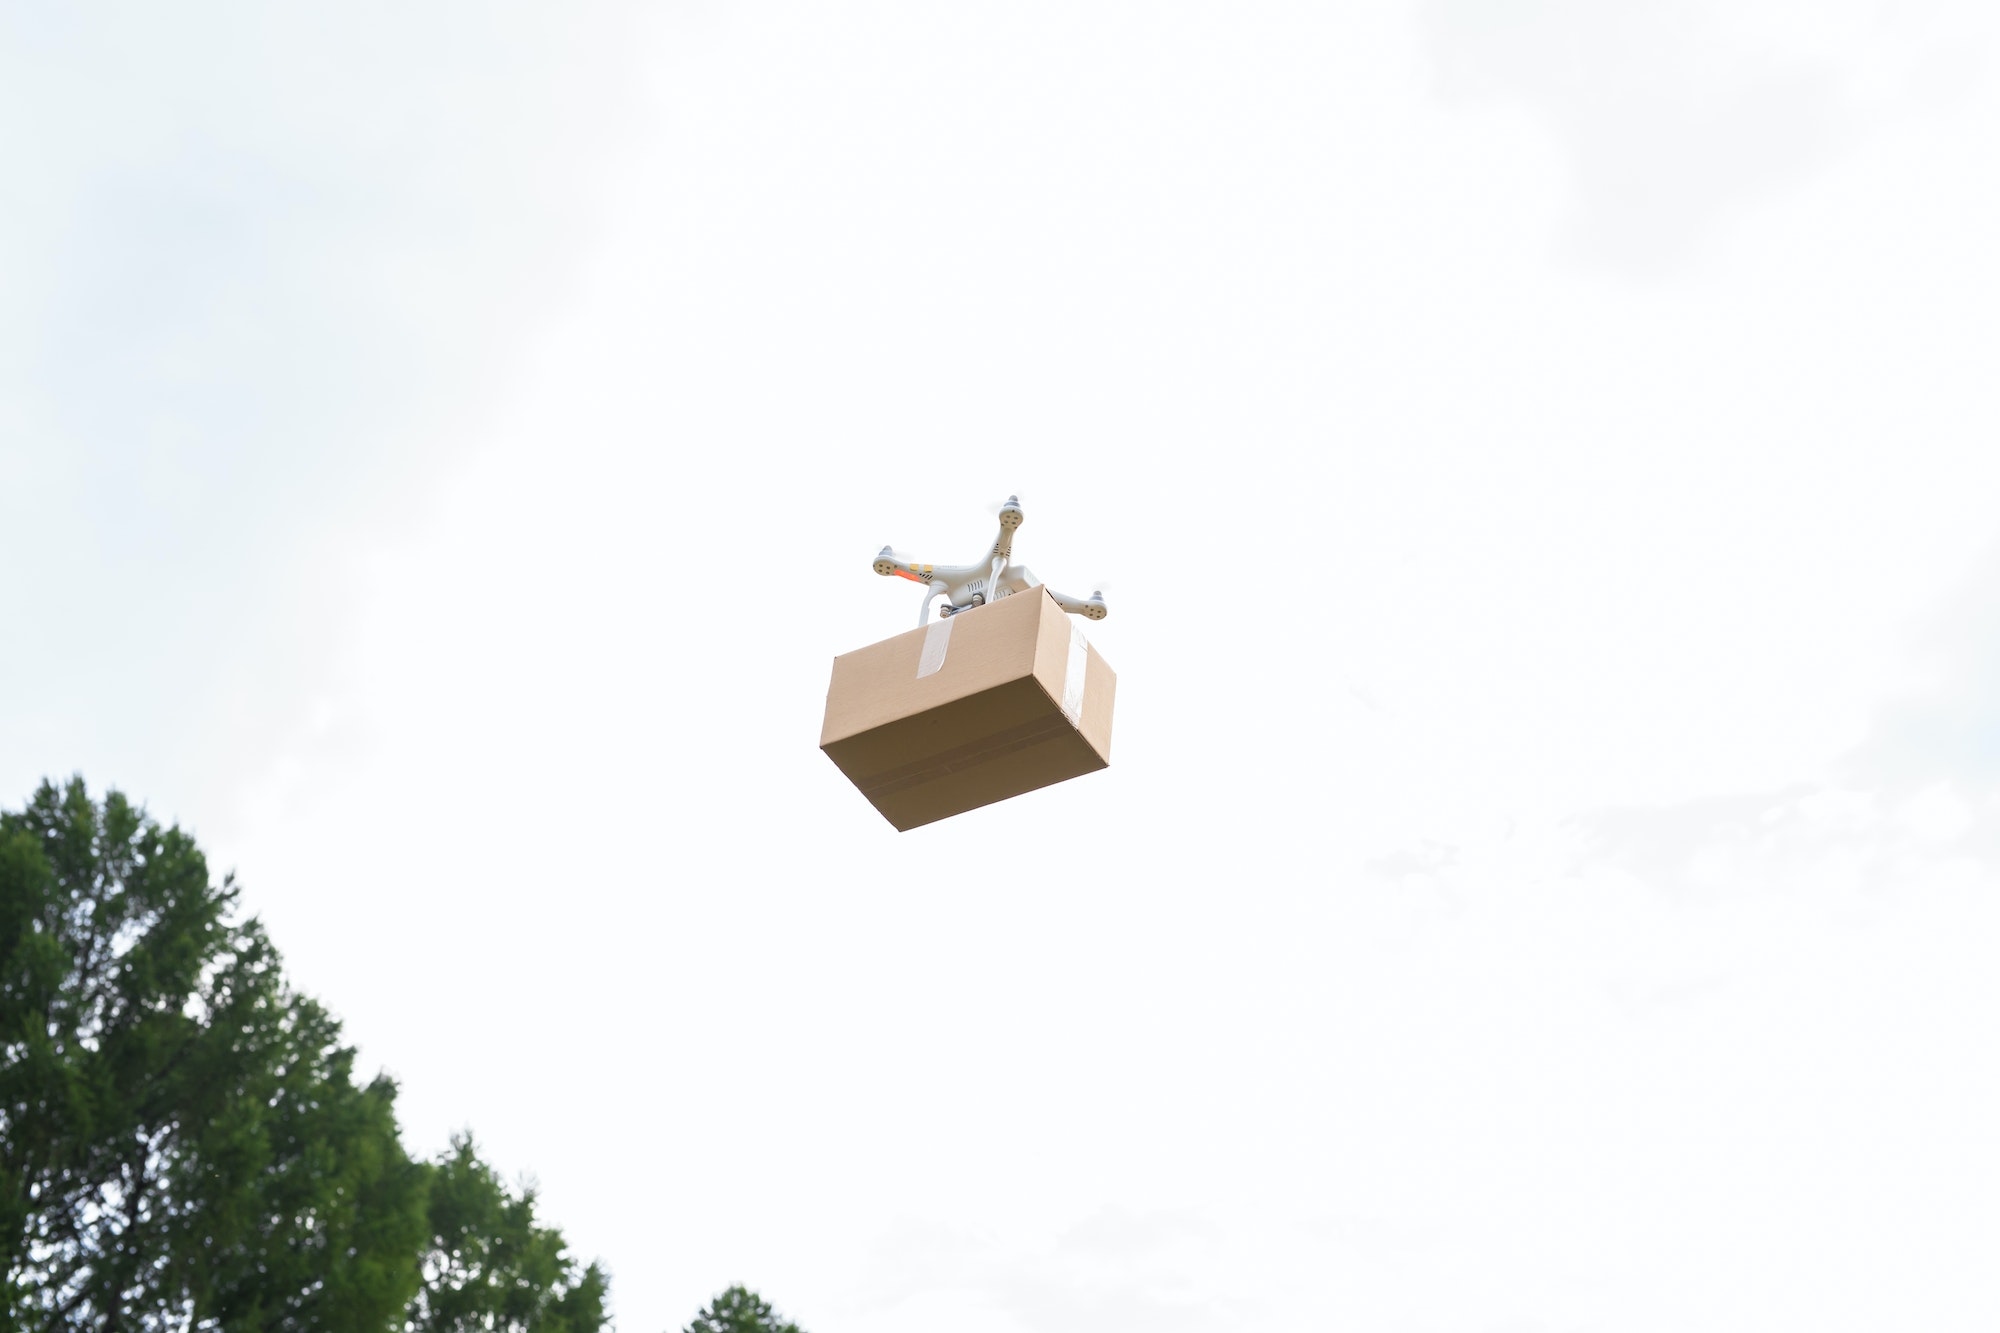 Drone delivers parcel